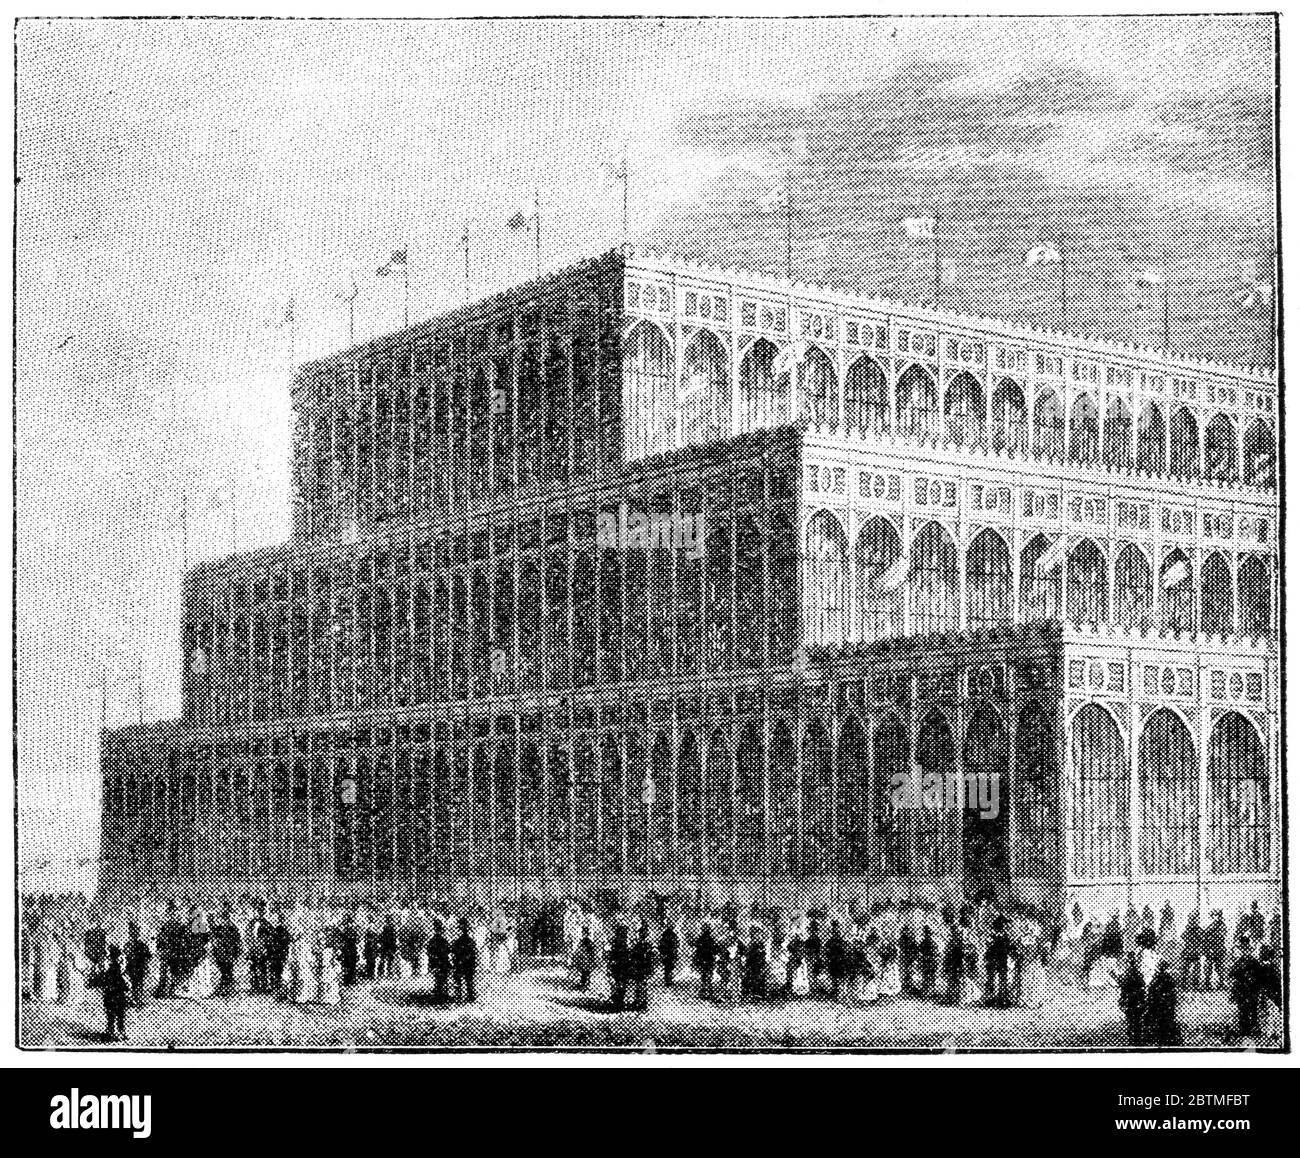 Le Crystal Palace (arrière) à Hyde Park pour la grande exposition internationale de 1851, Londres. Illustration du XIXe siècle. Fond blanc. Banque D'Images